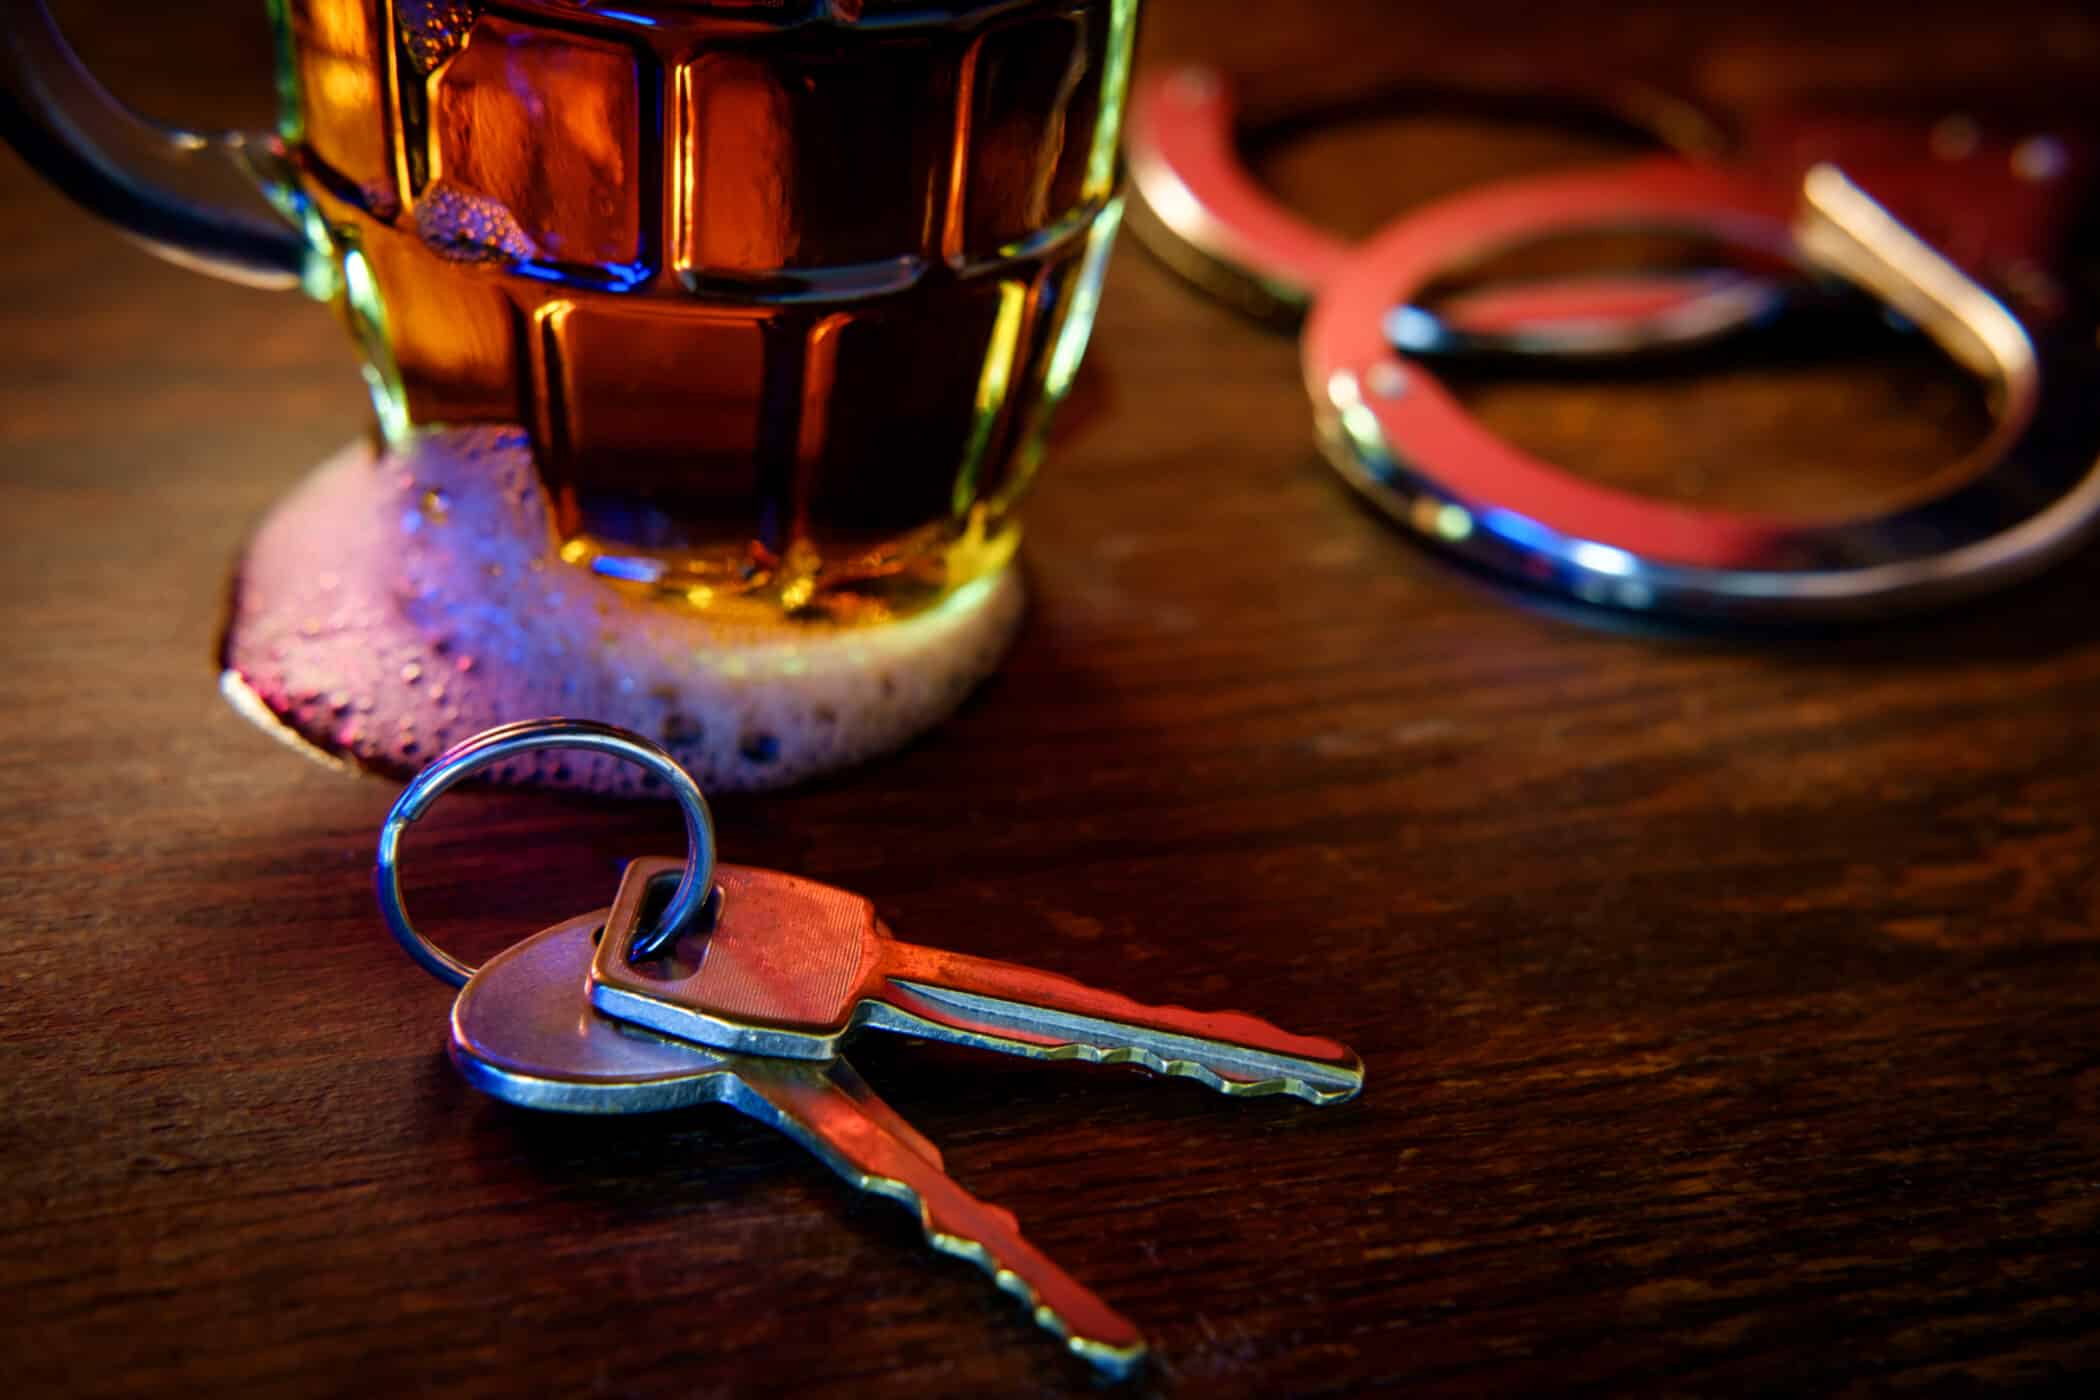 Beer, handcuffs, car keys